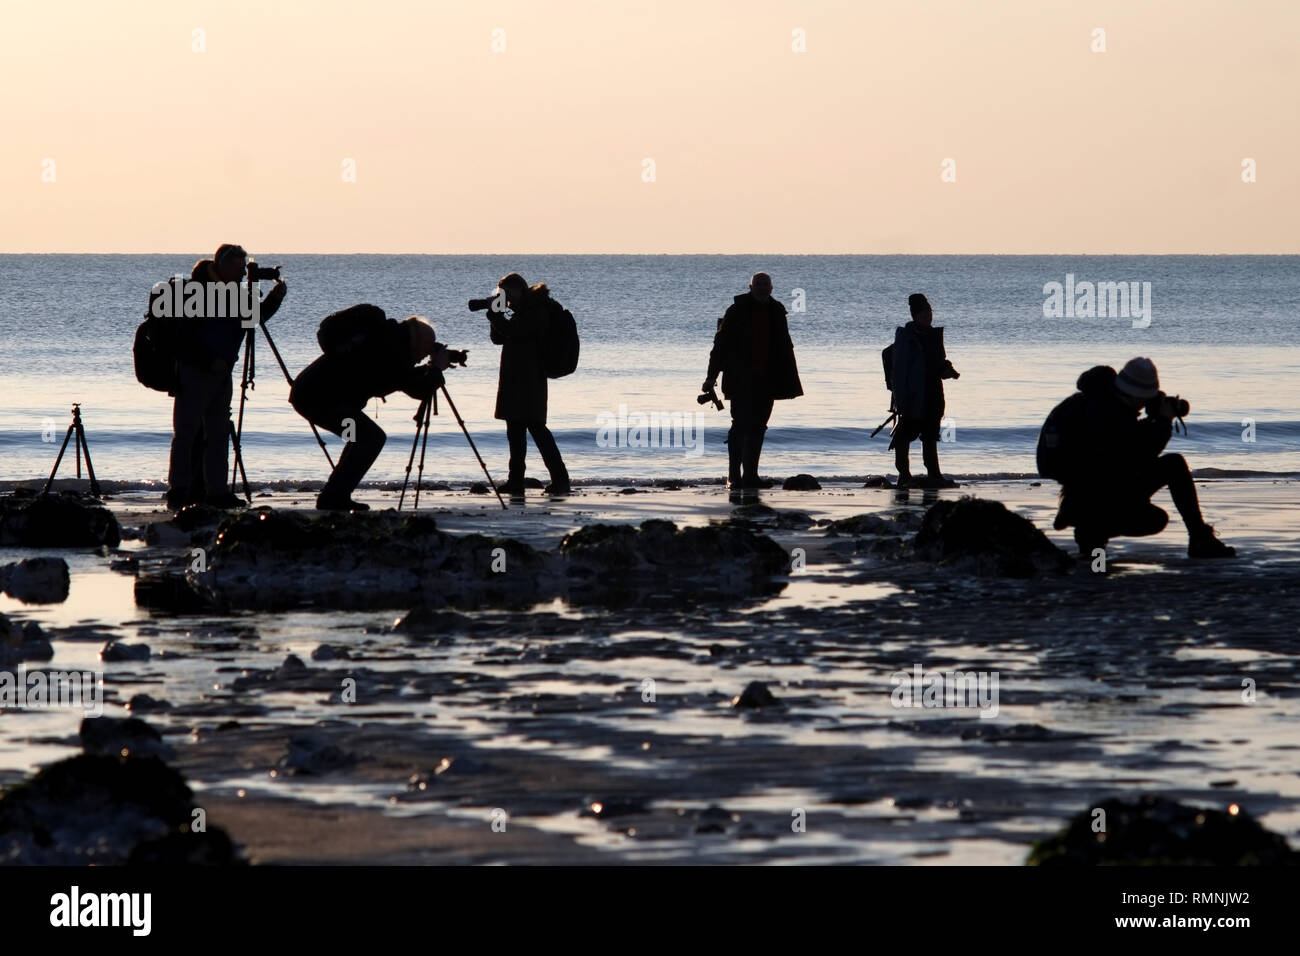 Groupe de photographes amateurs de photographier le coucher de soleil sur une plage. Banque D'Images